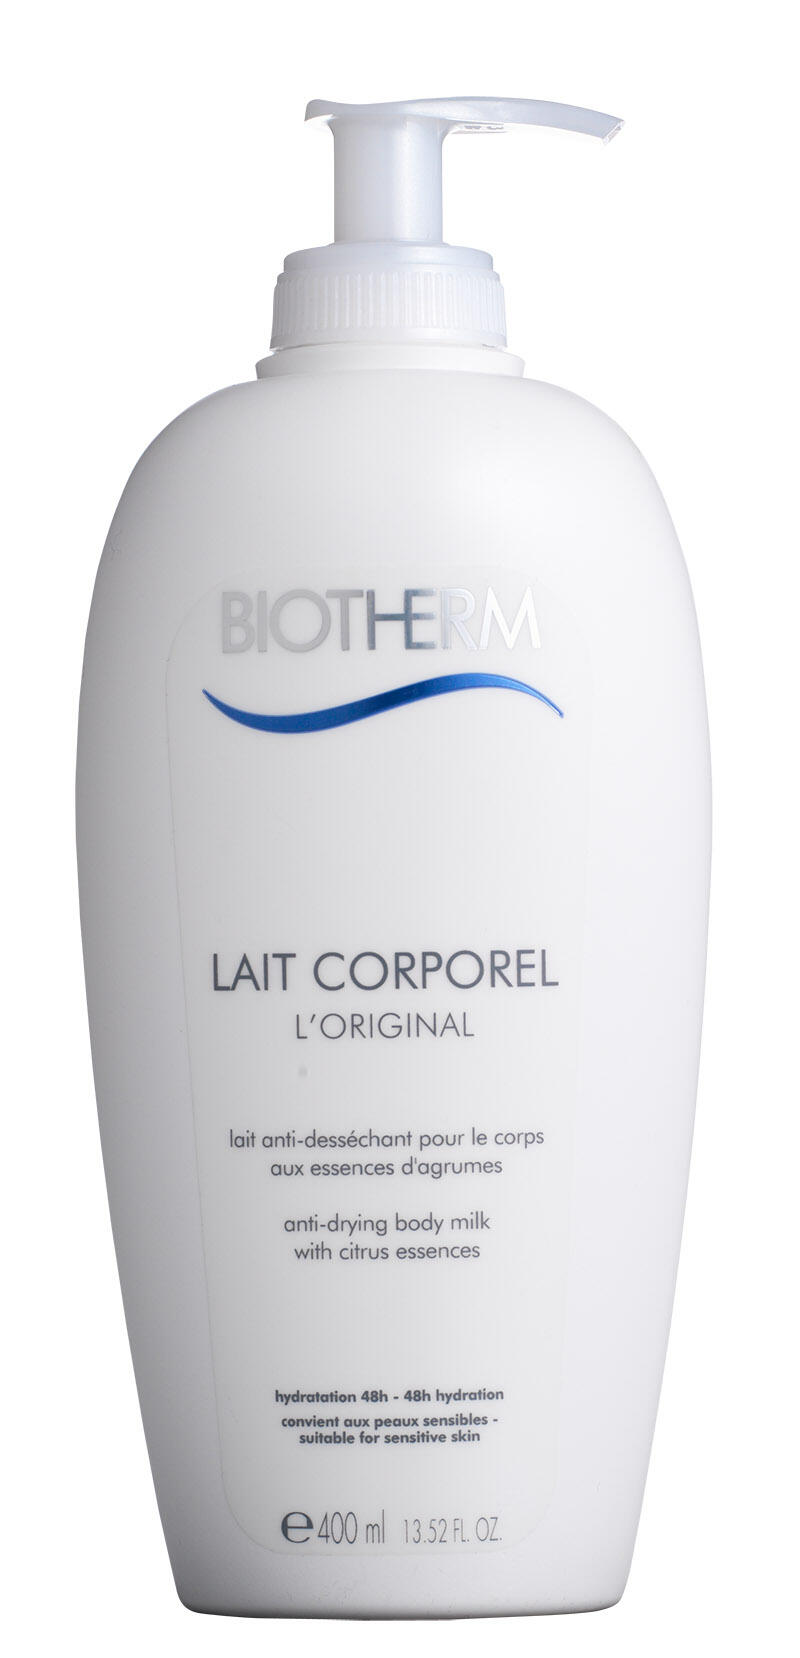 Lait Corporel L'Original Biotherm